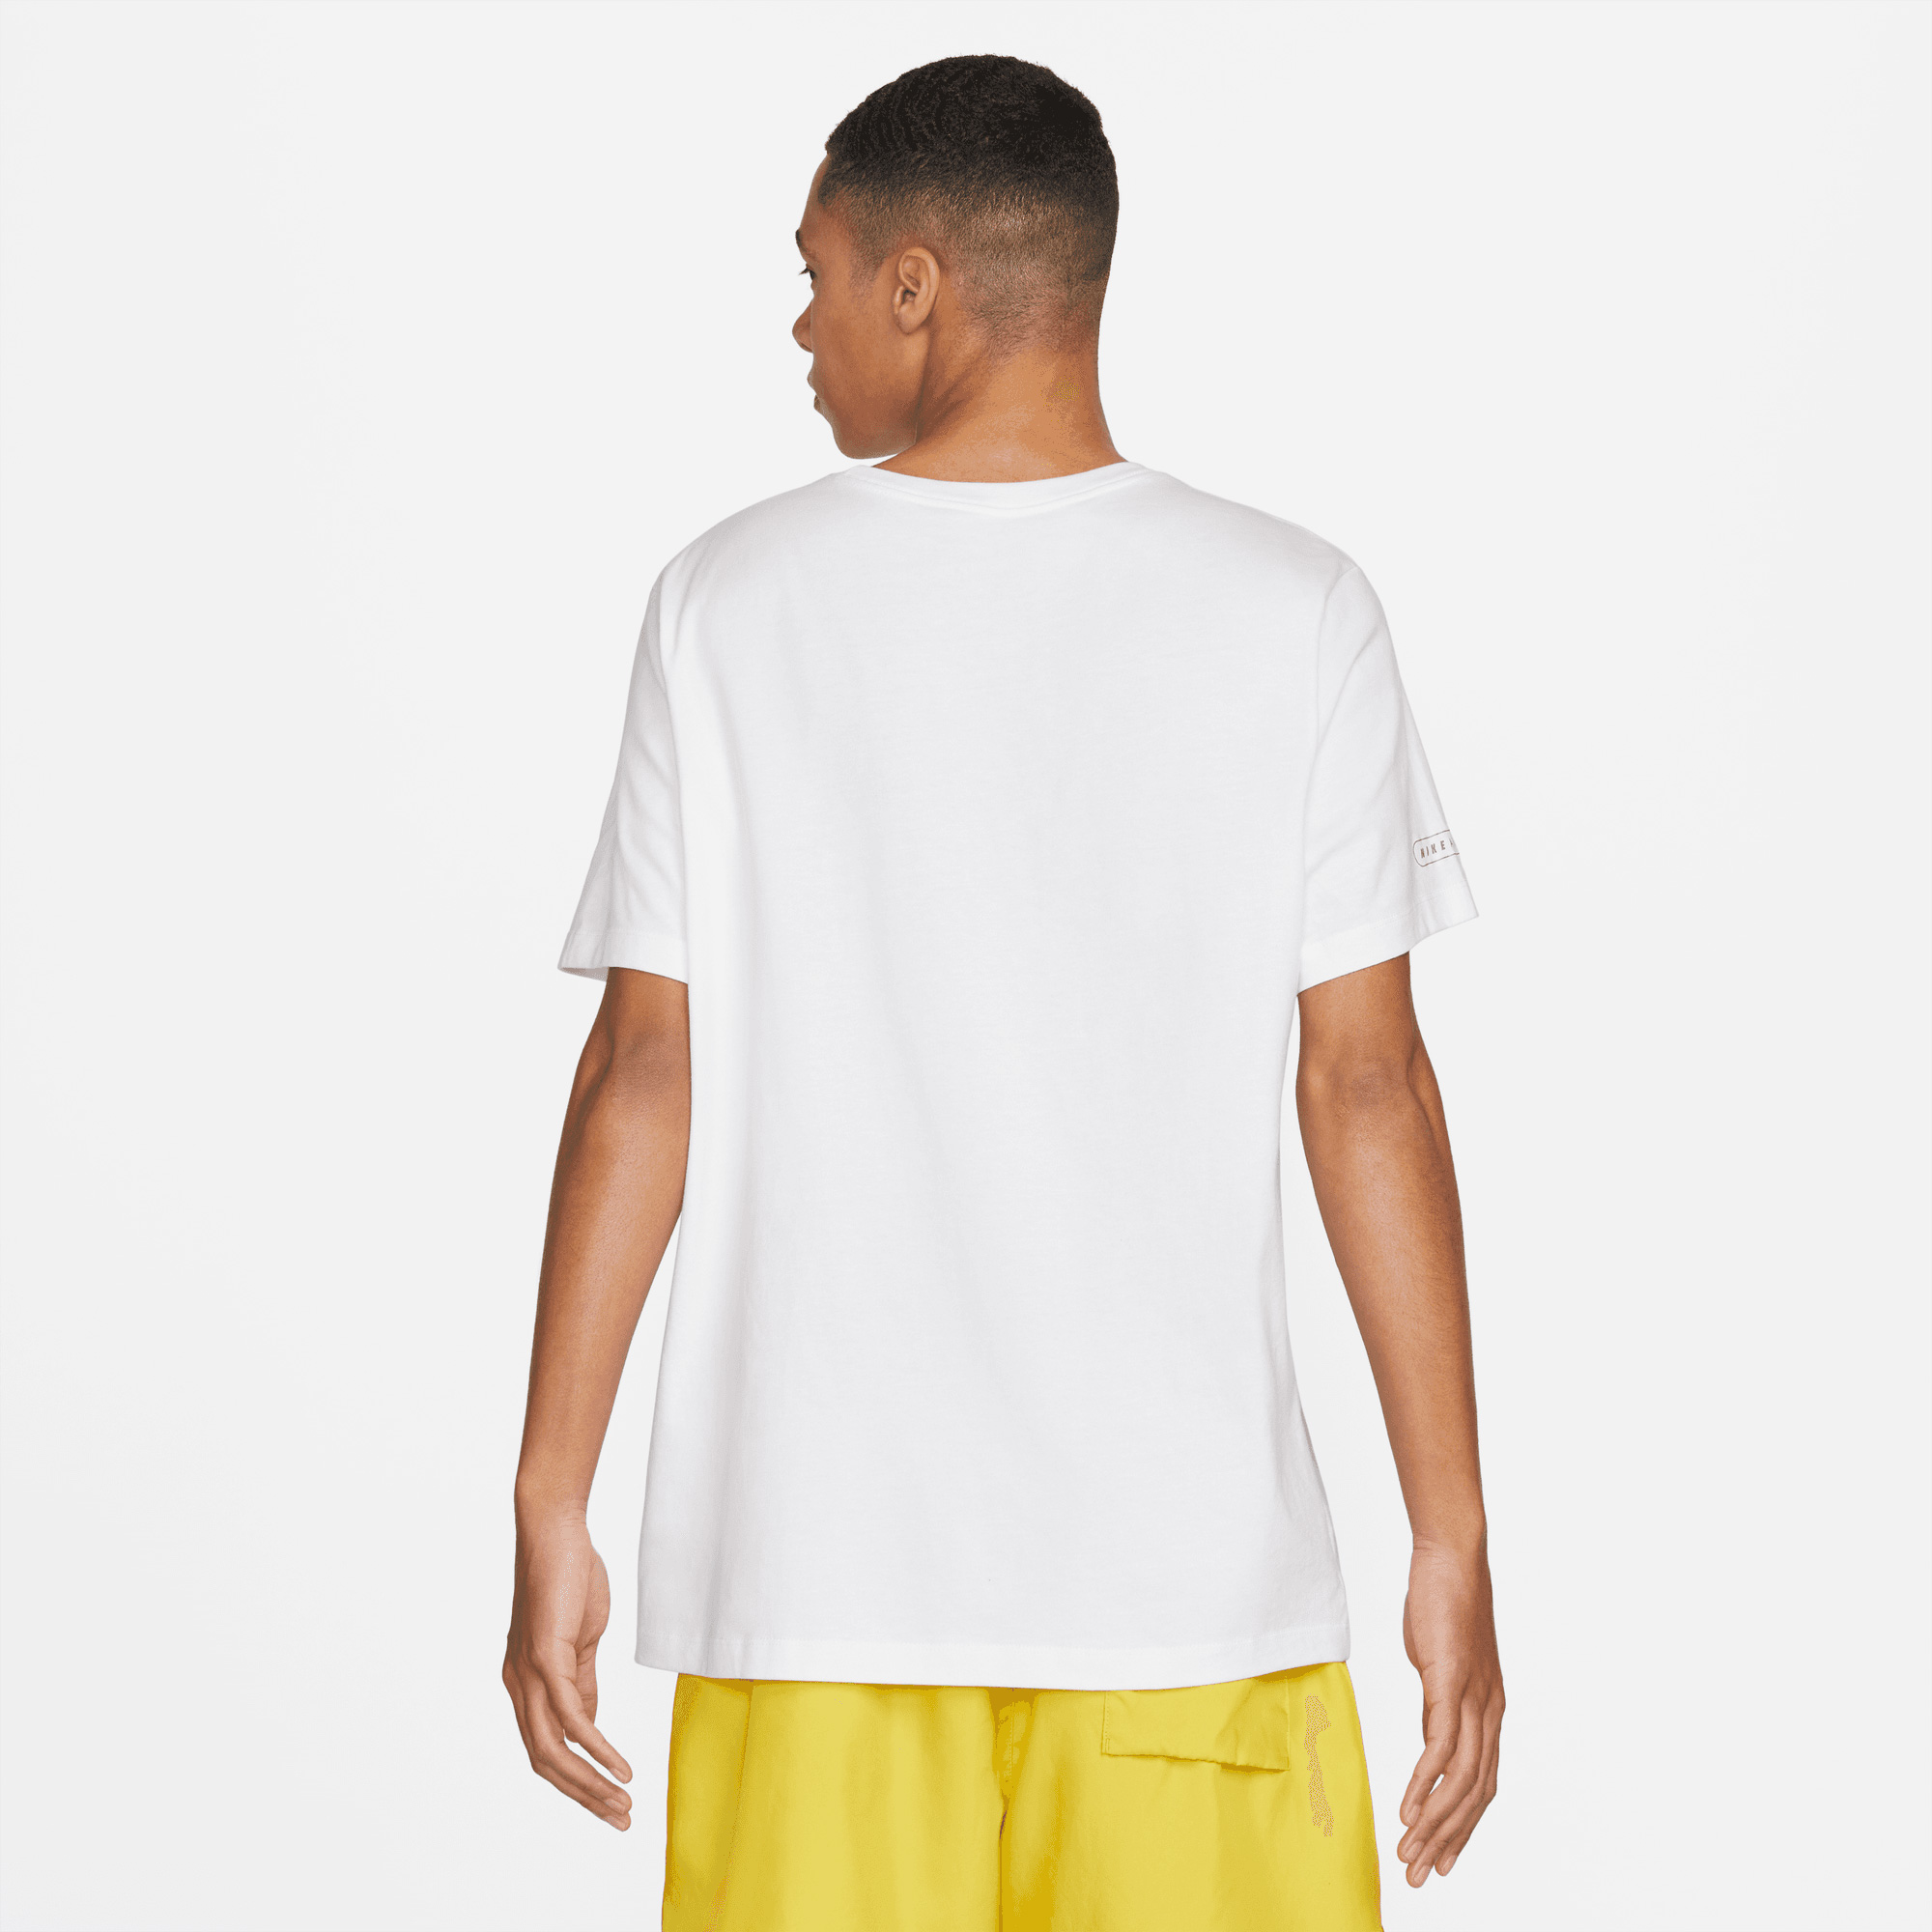 Nike Air Erkek Beyaz T-shirt